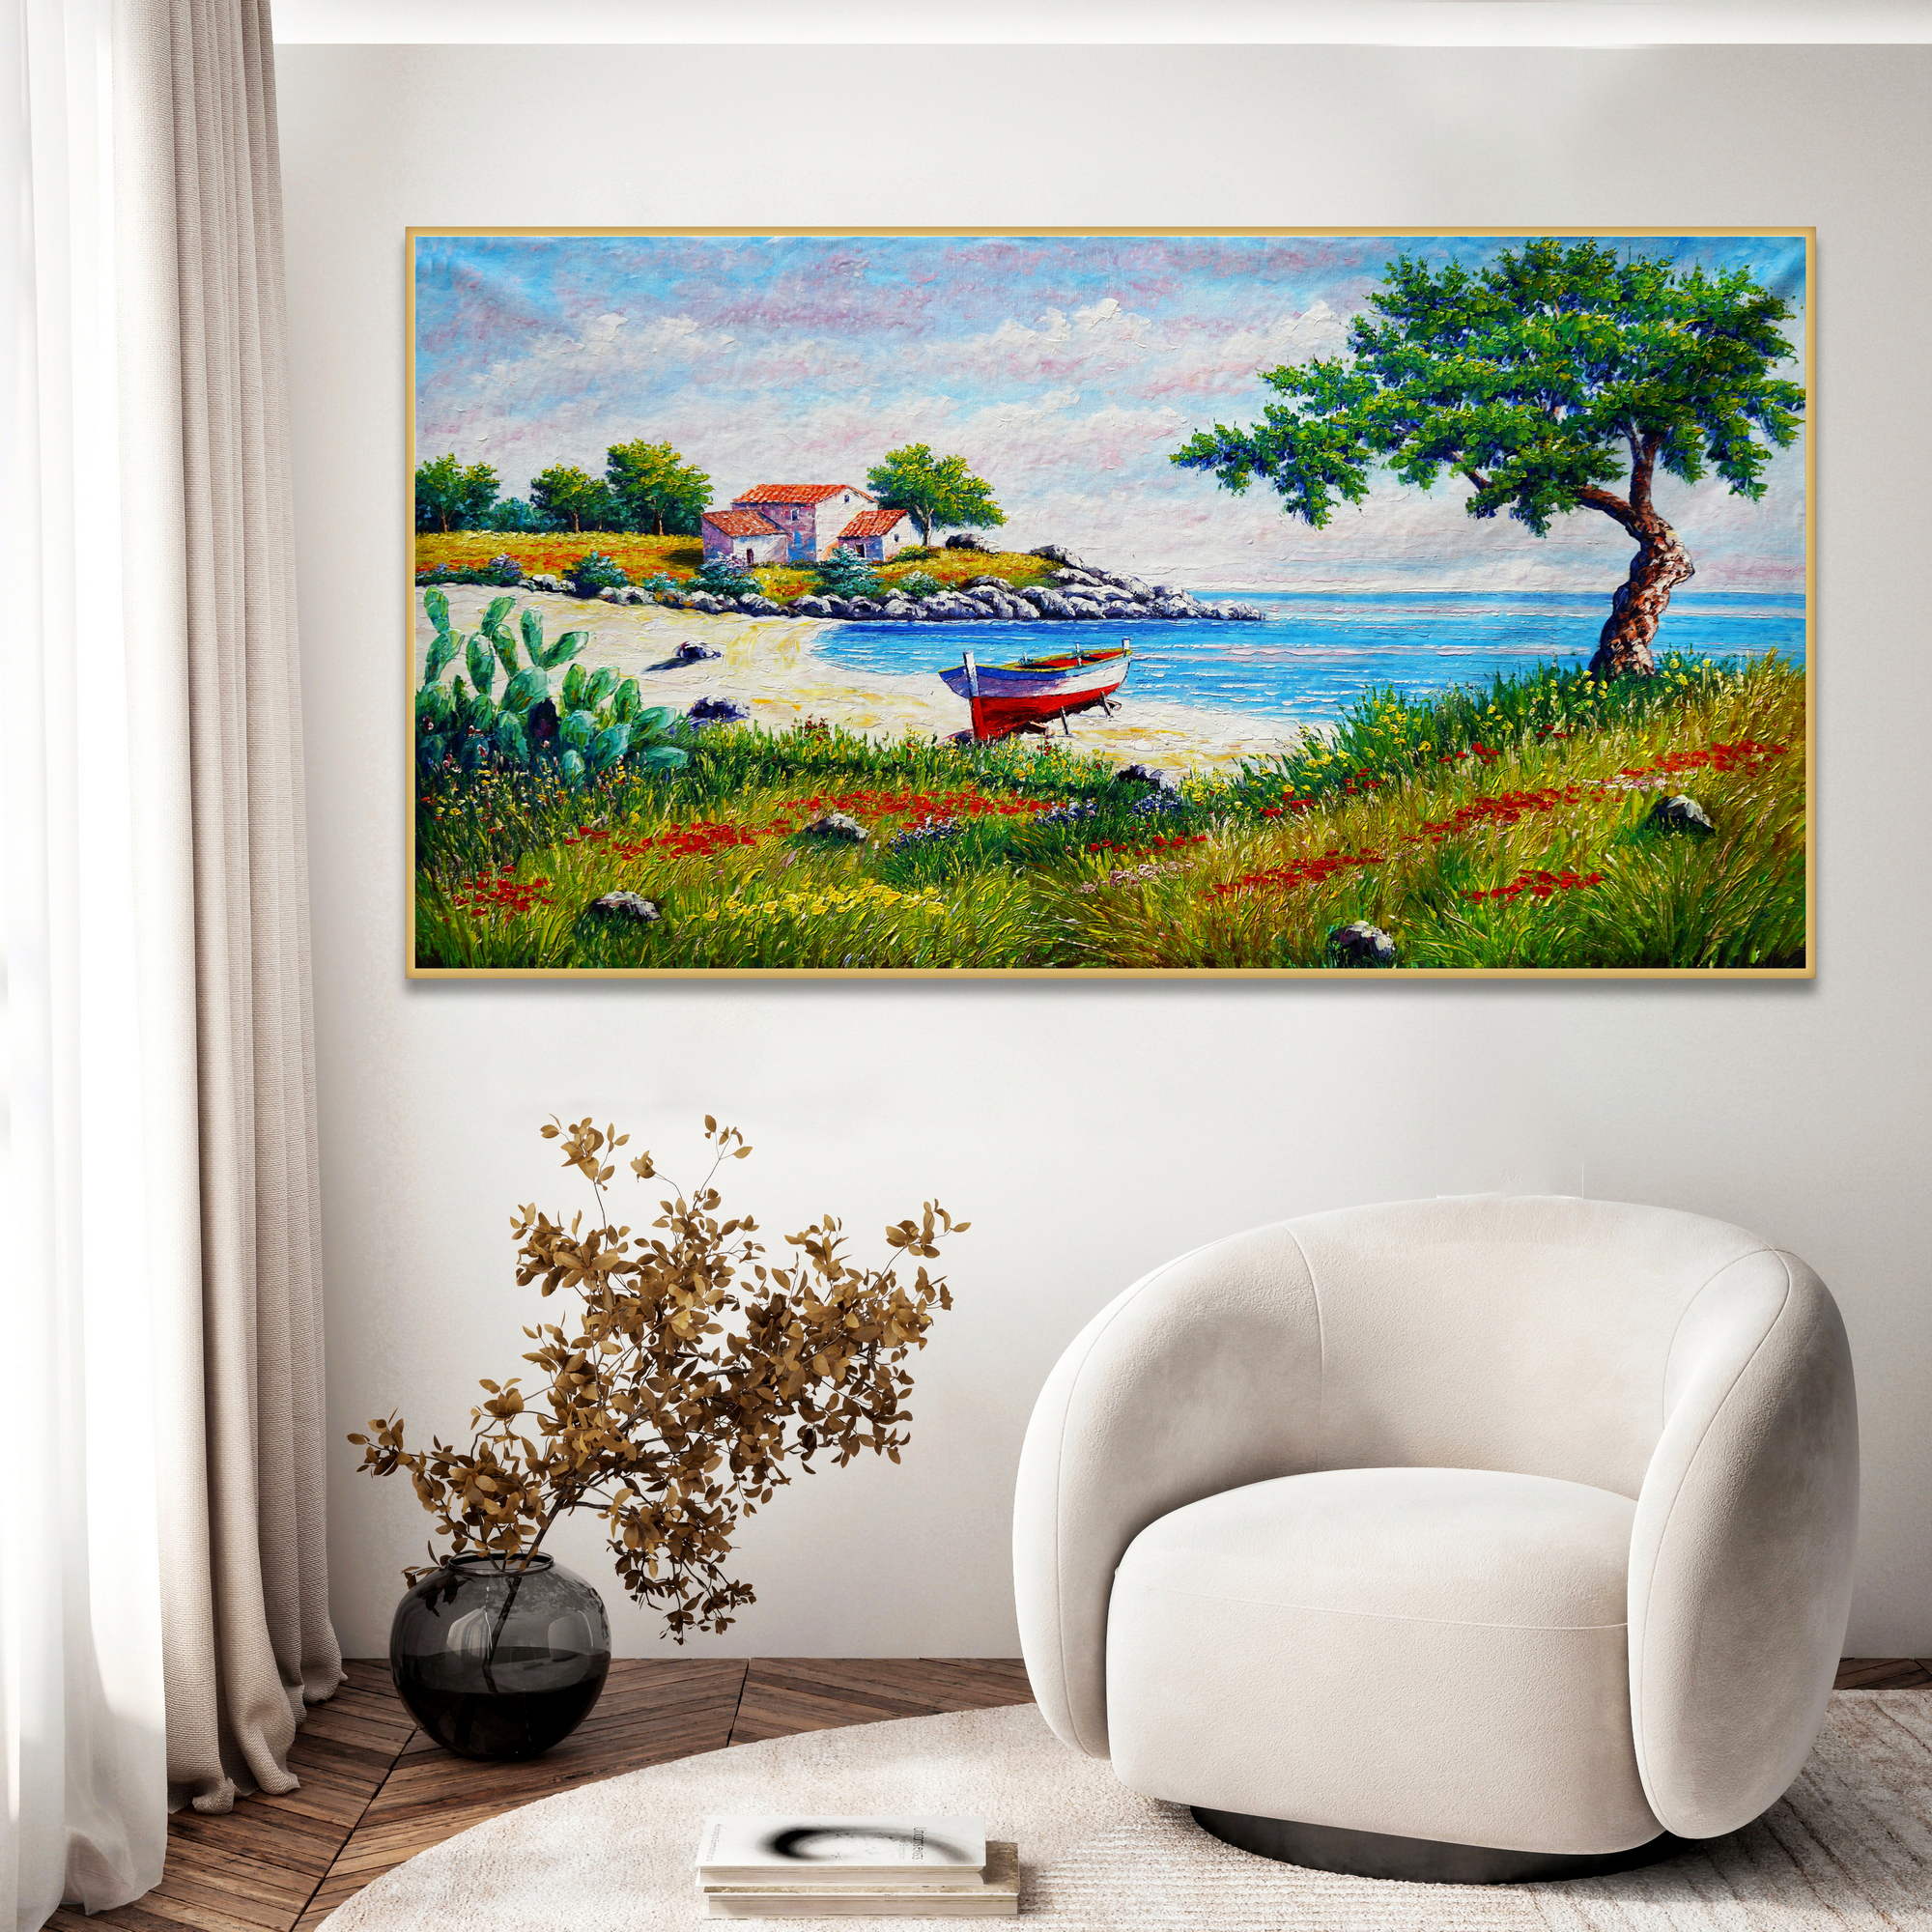 Bateau de plage paysage marin peint à la main 90x180cm